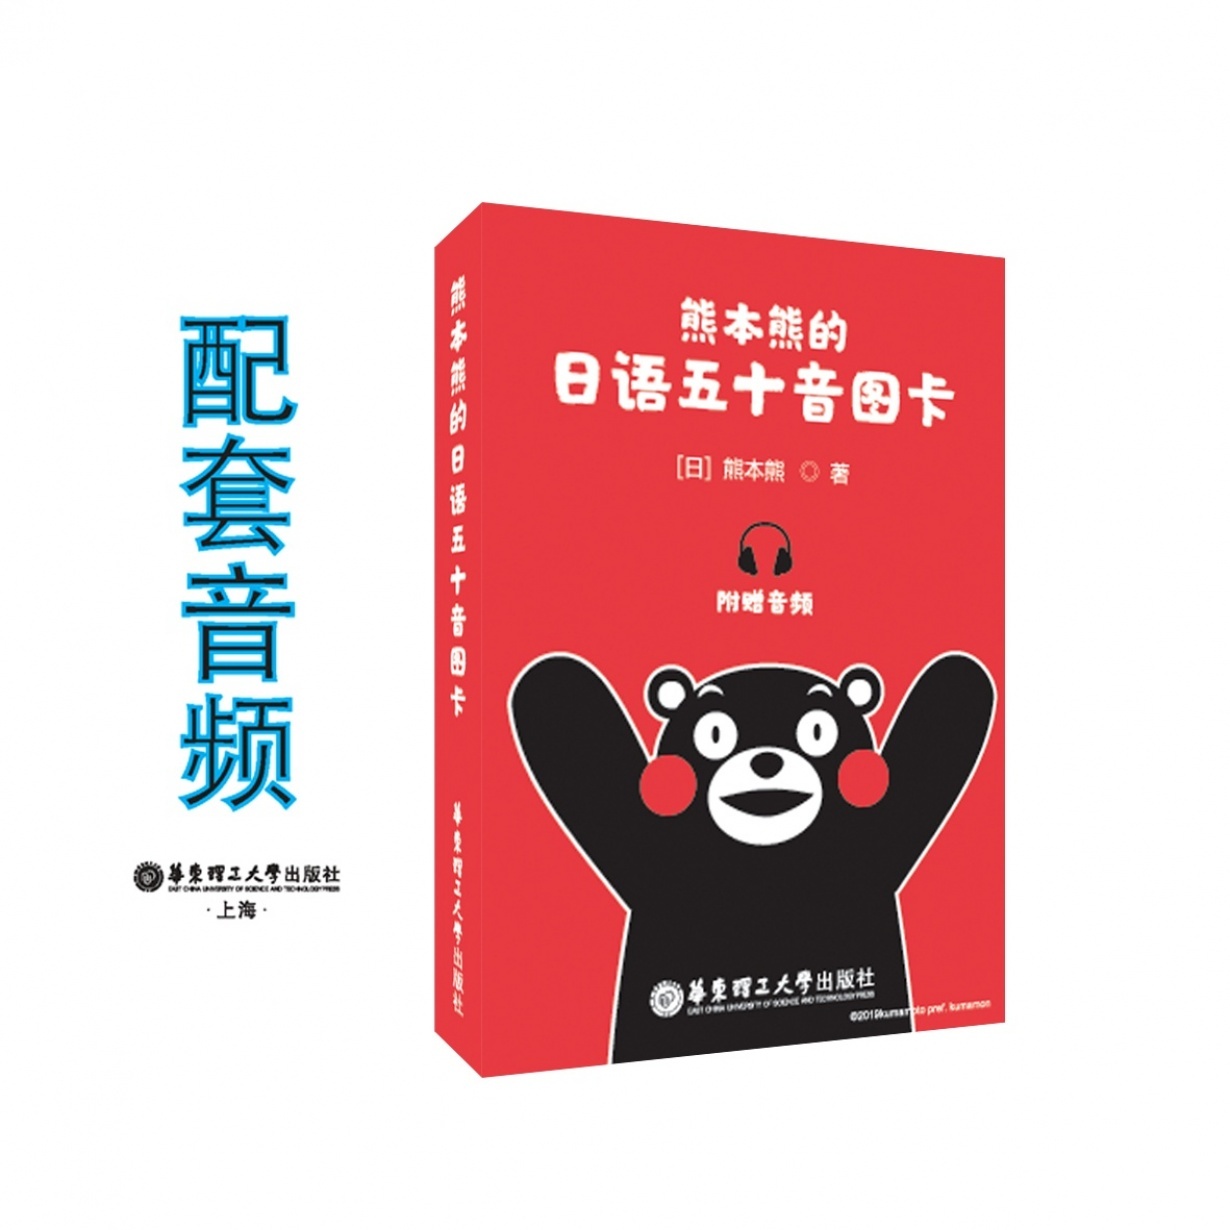 熊本熊的日语五十音卡片.mp3.mp4